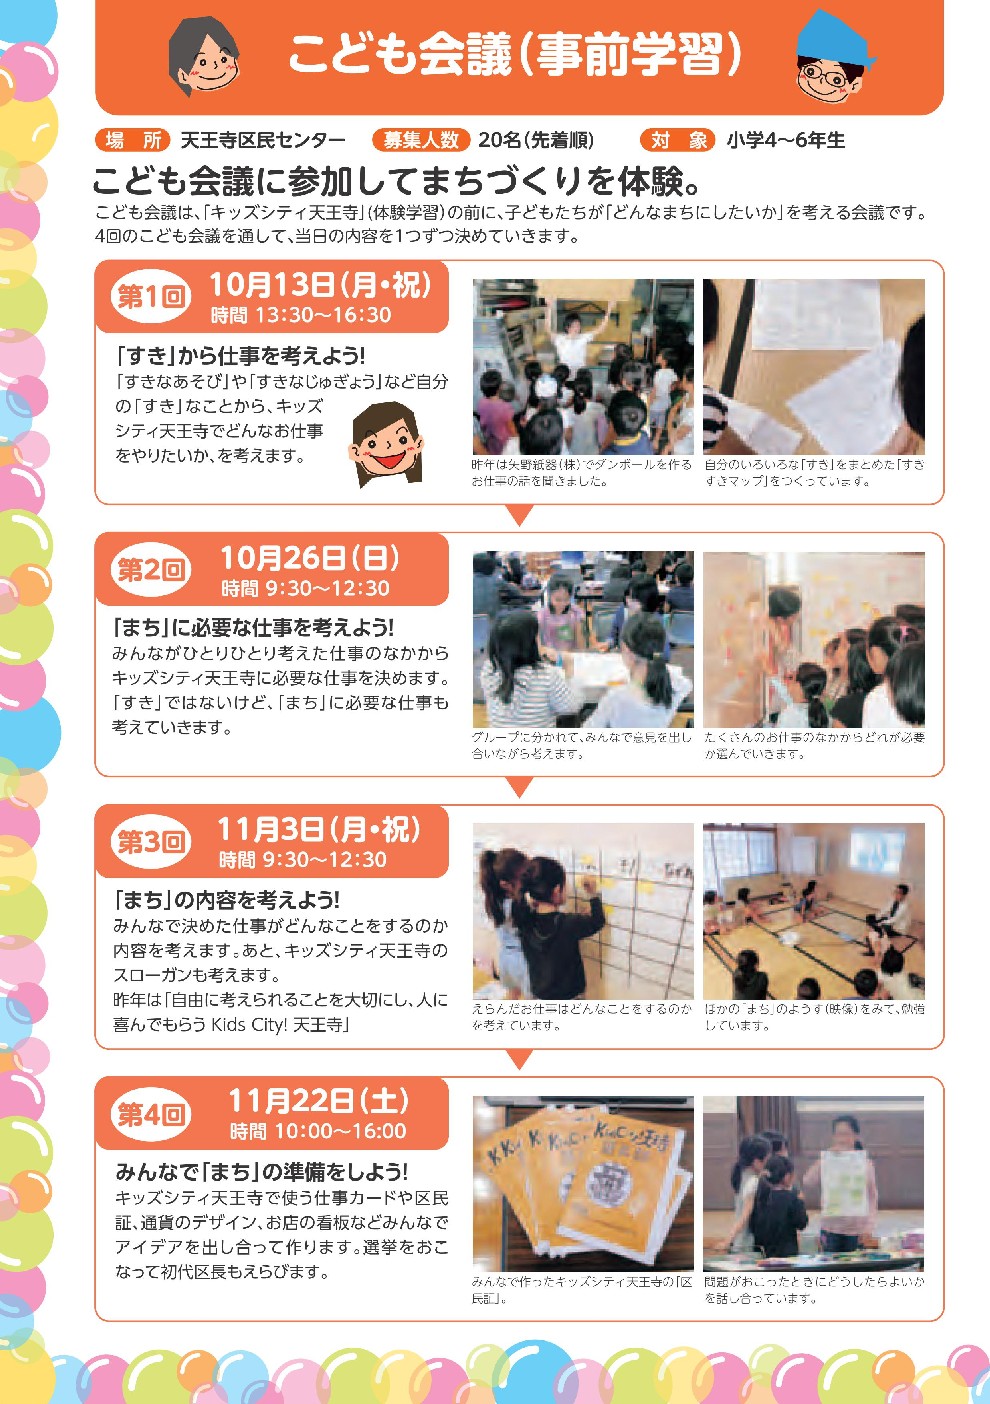 http://www.cobon.jp/news/2014/08/27/KidsCity_naka_0813_010.jpg